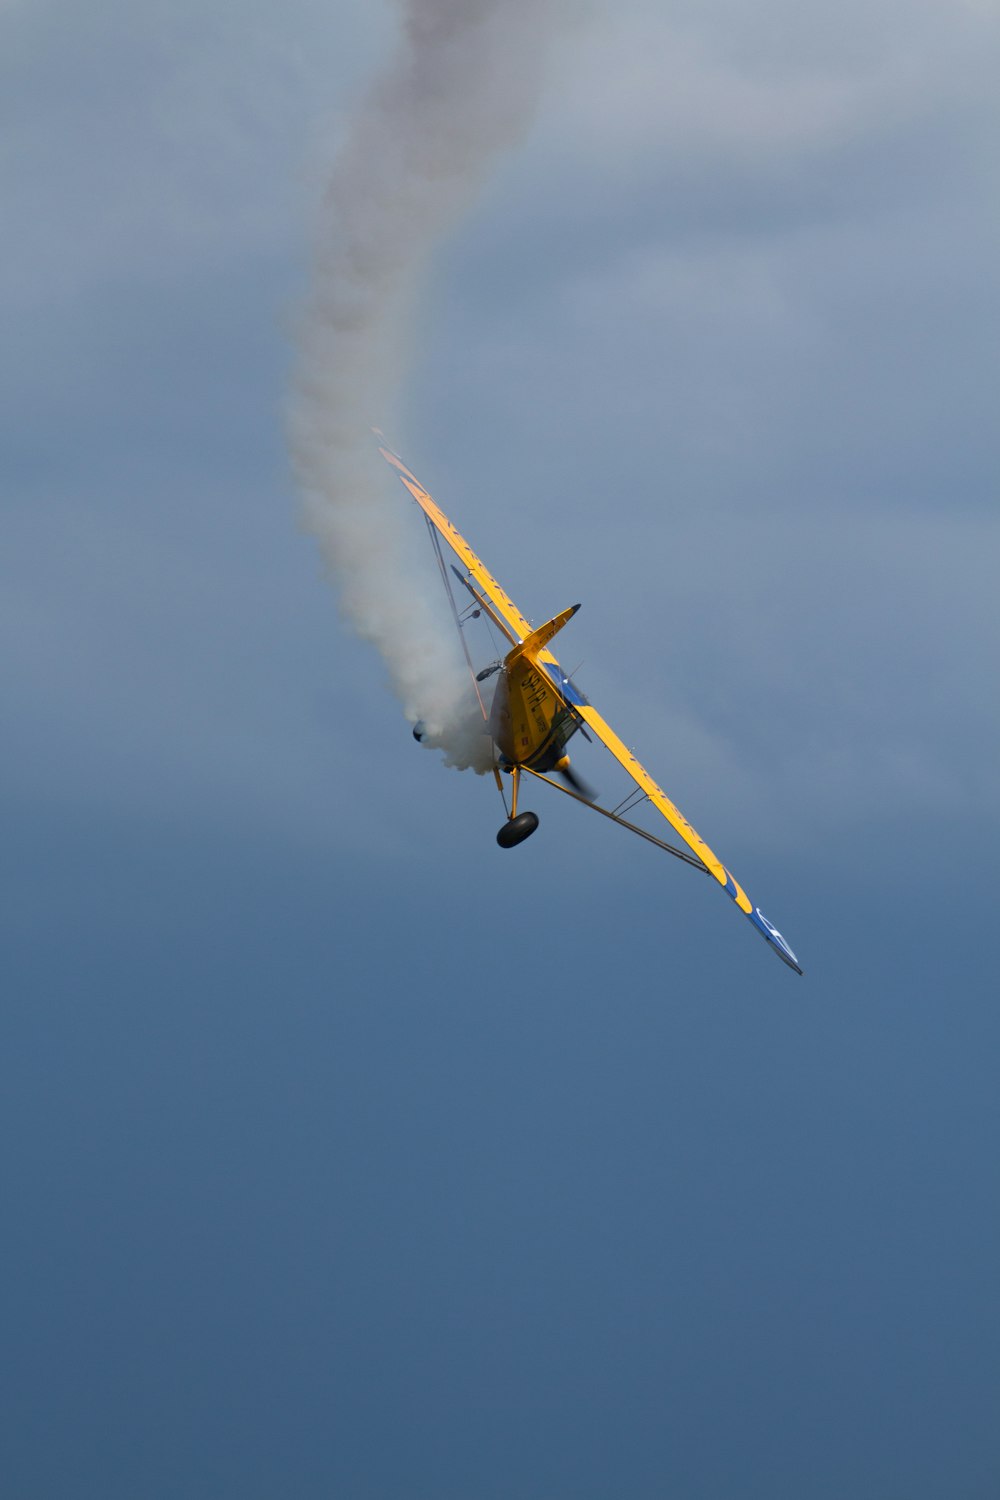 un pequeño avión volando a través de un cielo azul nublado